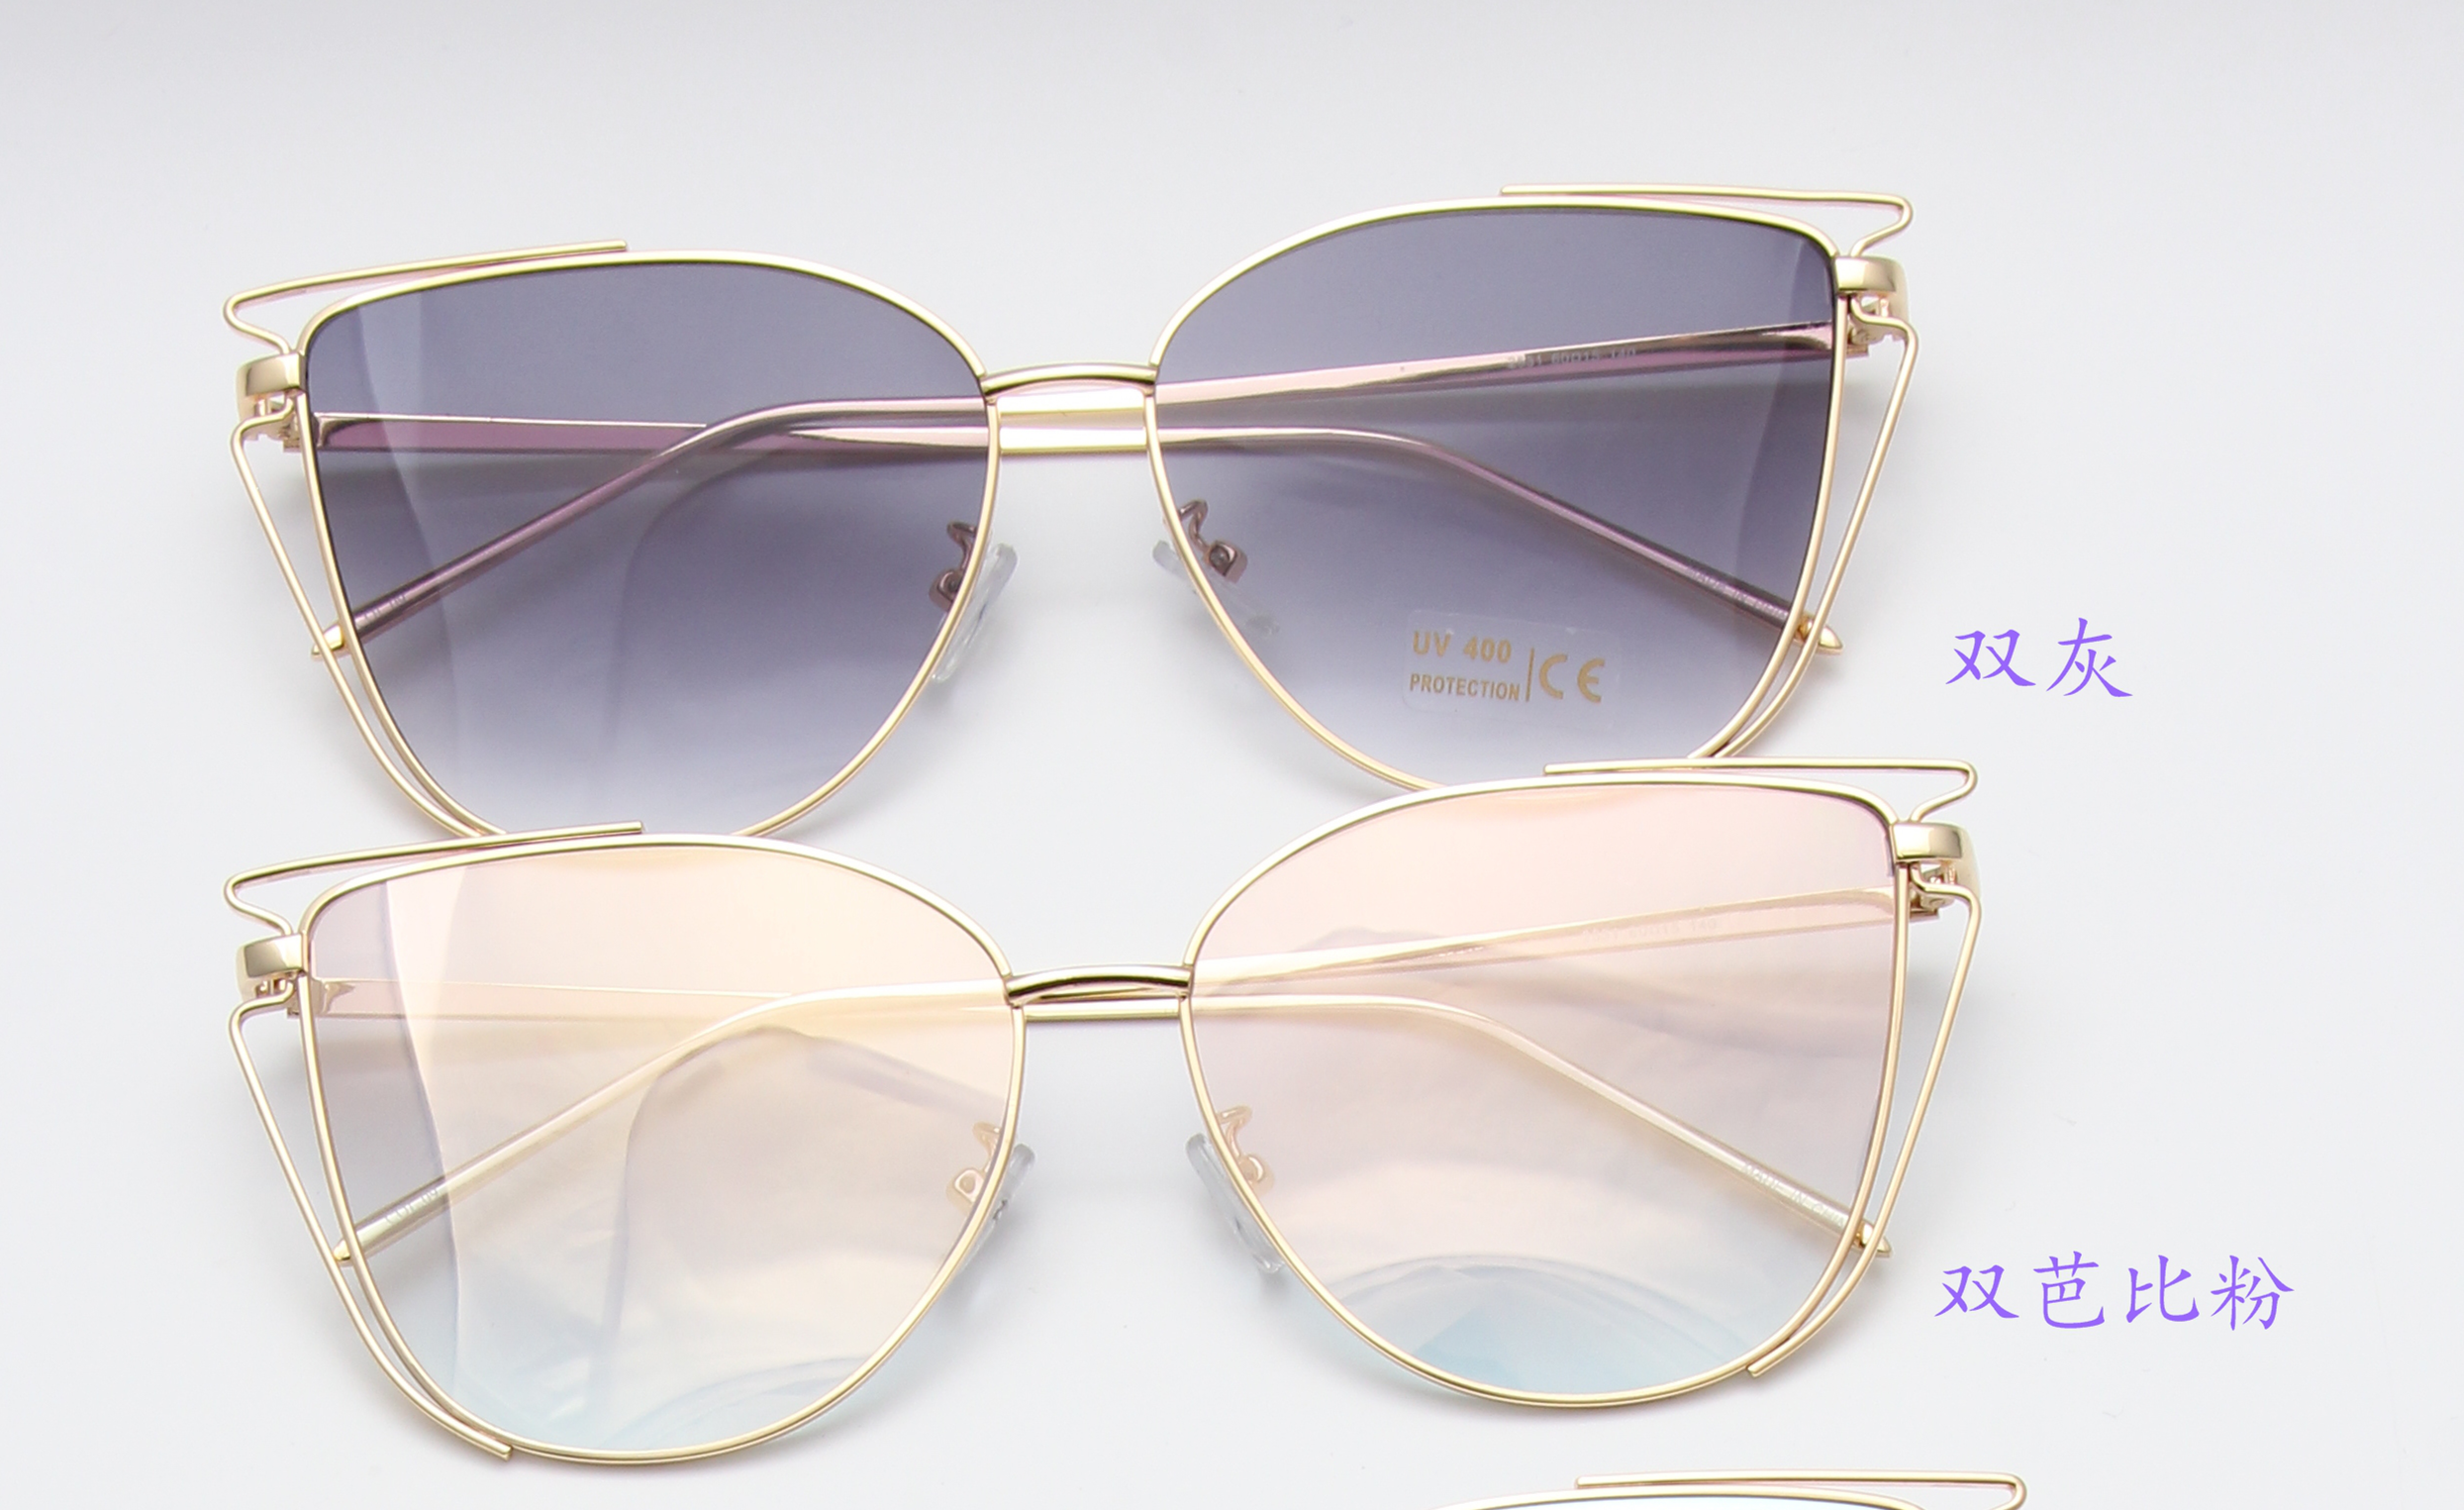 新款多色高档时尚太阳镜UV400镜片防紫外线眼镜防晒镜图